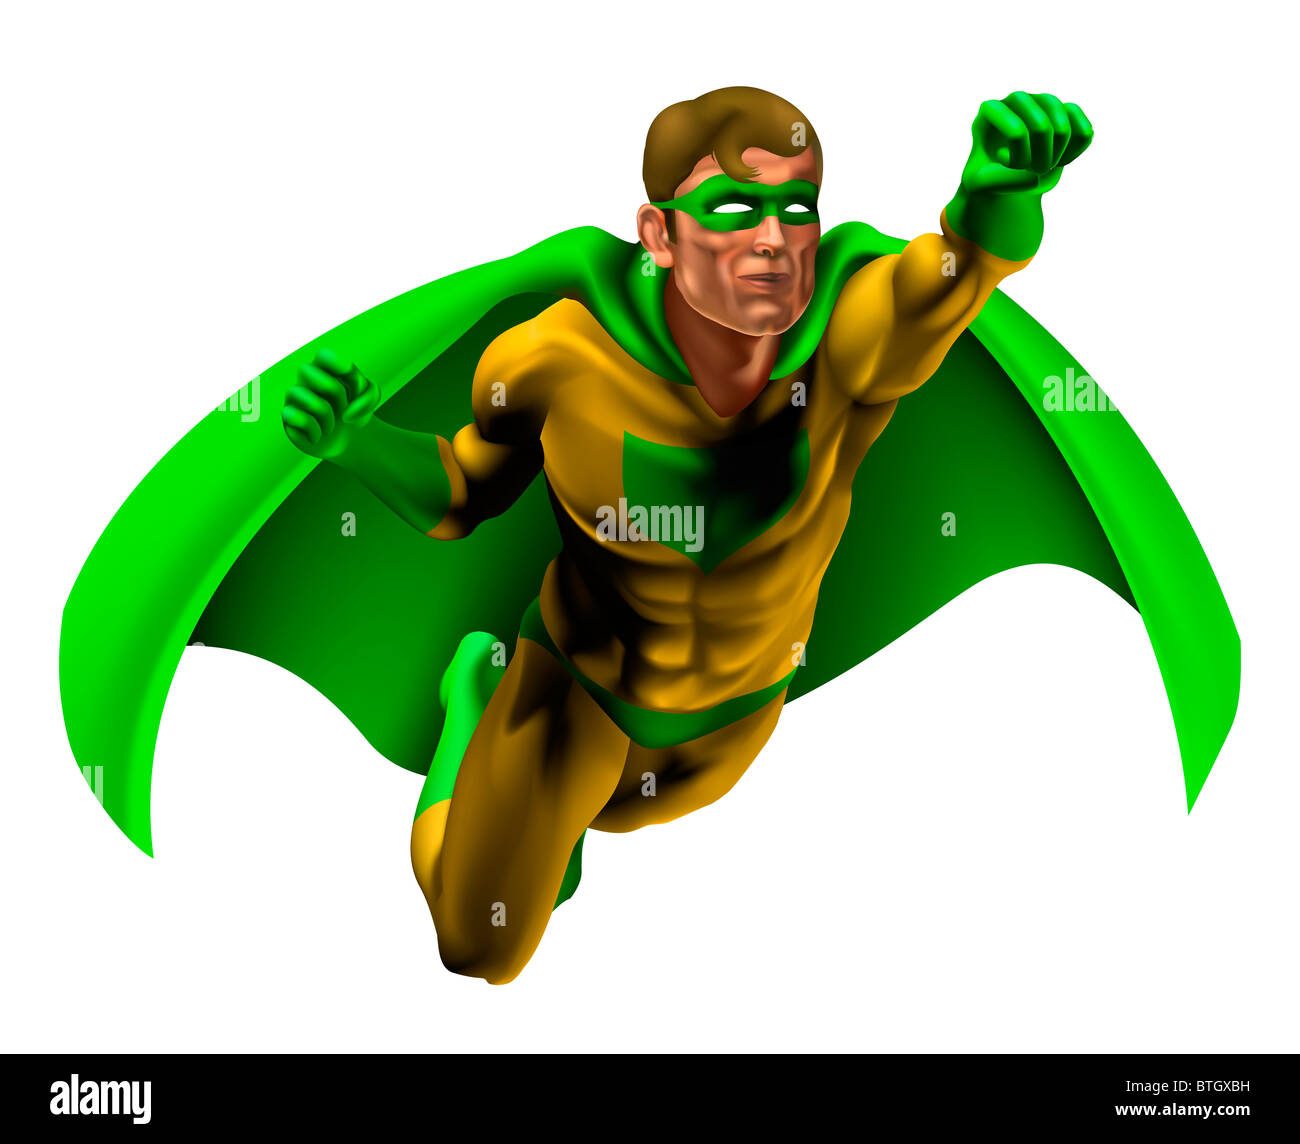 Illustrazione di un supereroe incredibile vestito in giallo e verde con costume cape volare attraverso l'aria Foto Stock